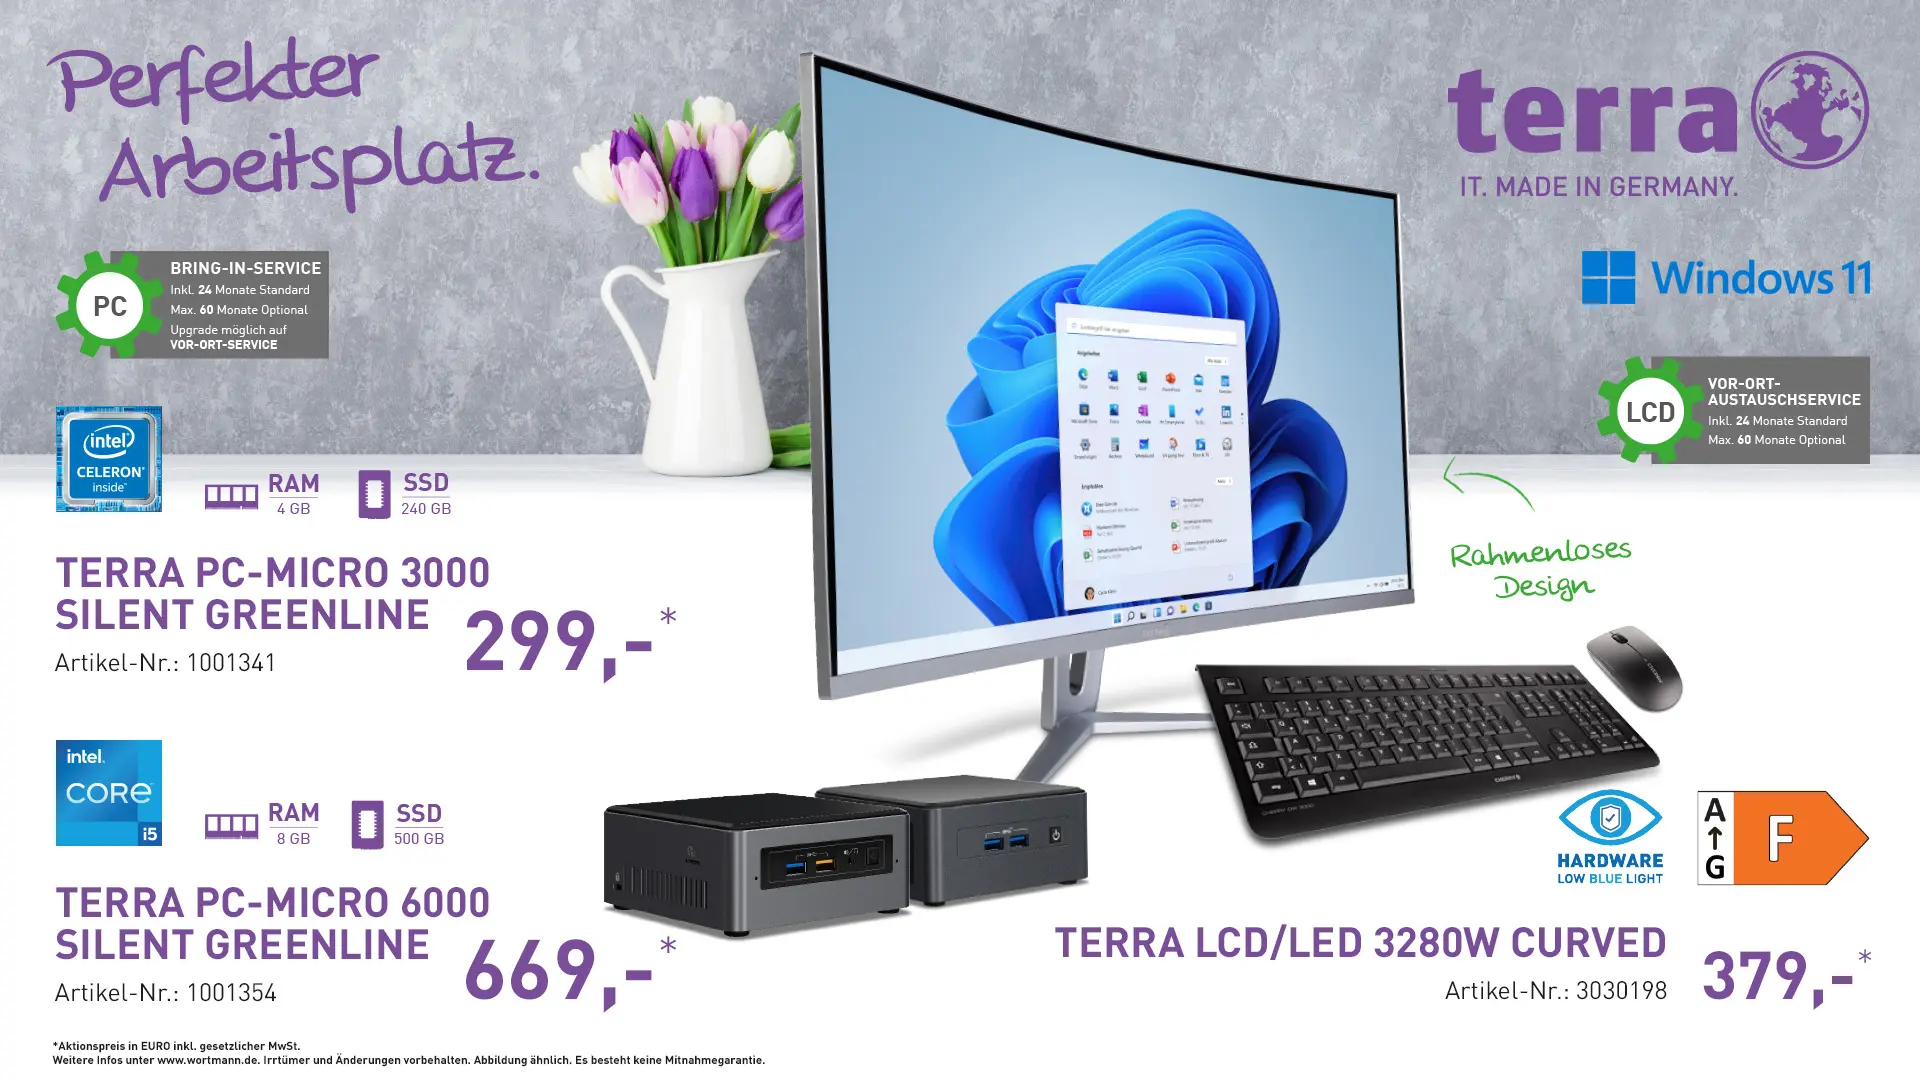 Terra PC Micro 3000, Terra PC Micro 6000, Terra LCD/LED 3280w Curved